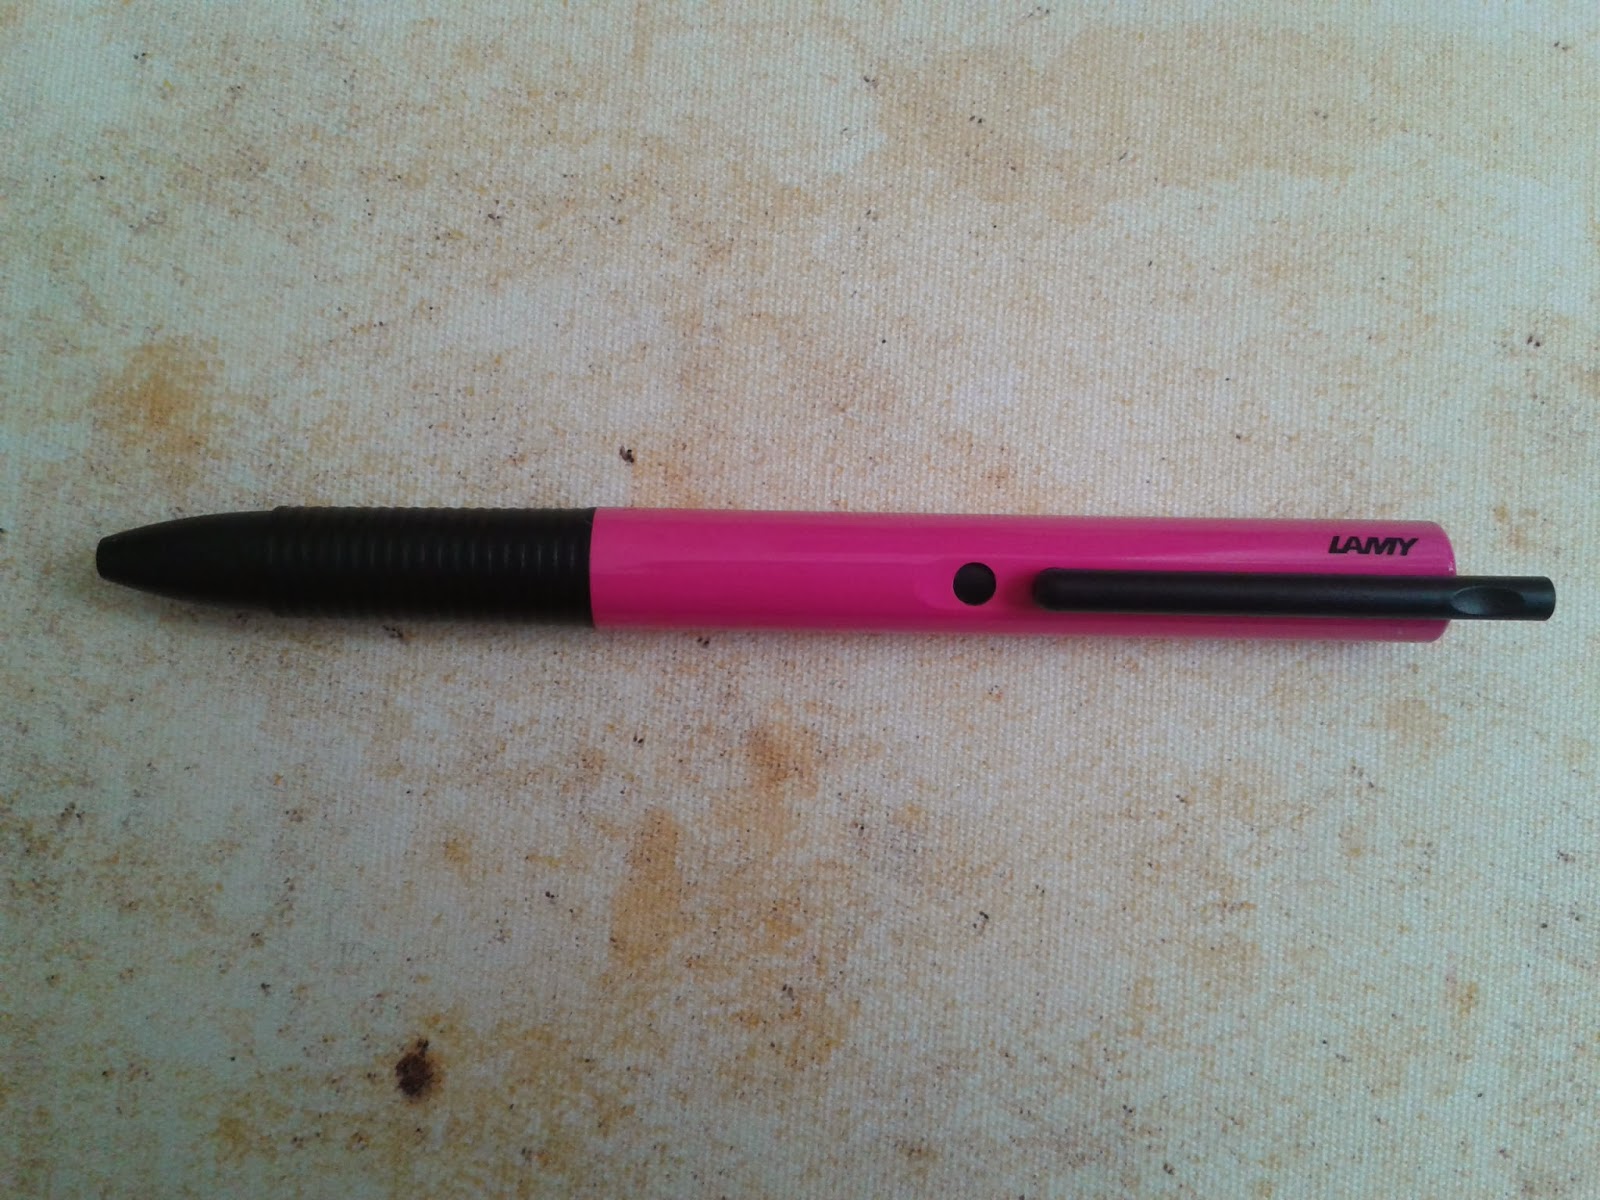 Pen Collection geekery: Sharpie Stylo Grip 0.4mm Pen